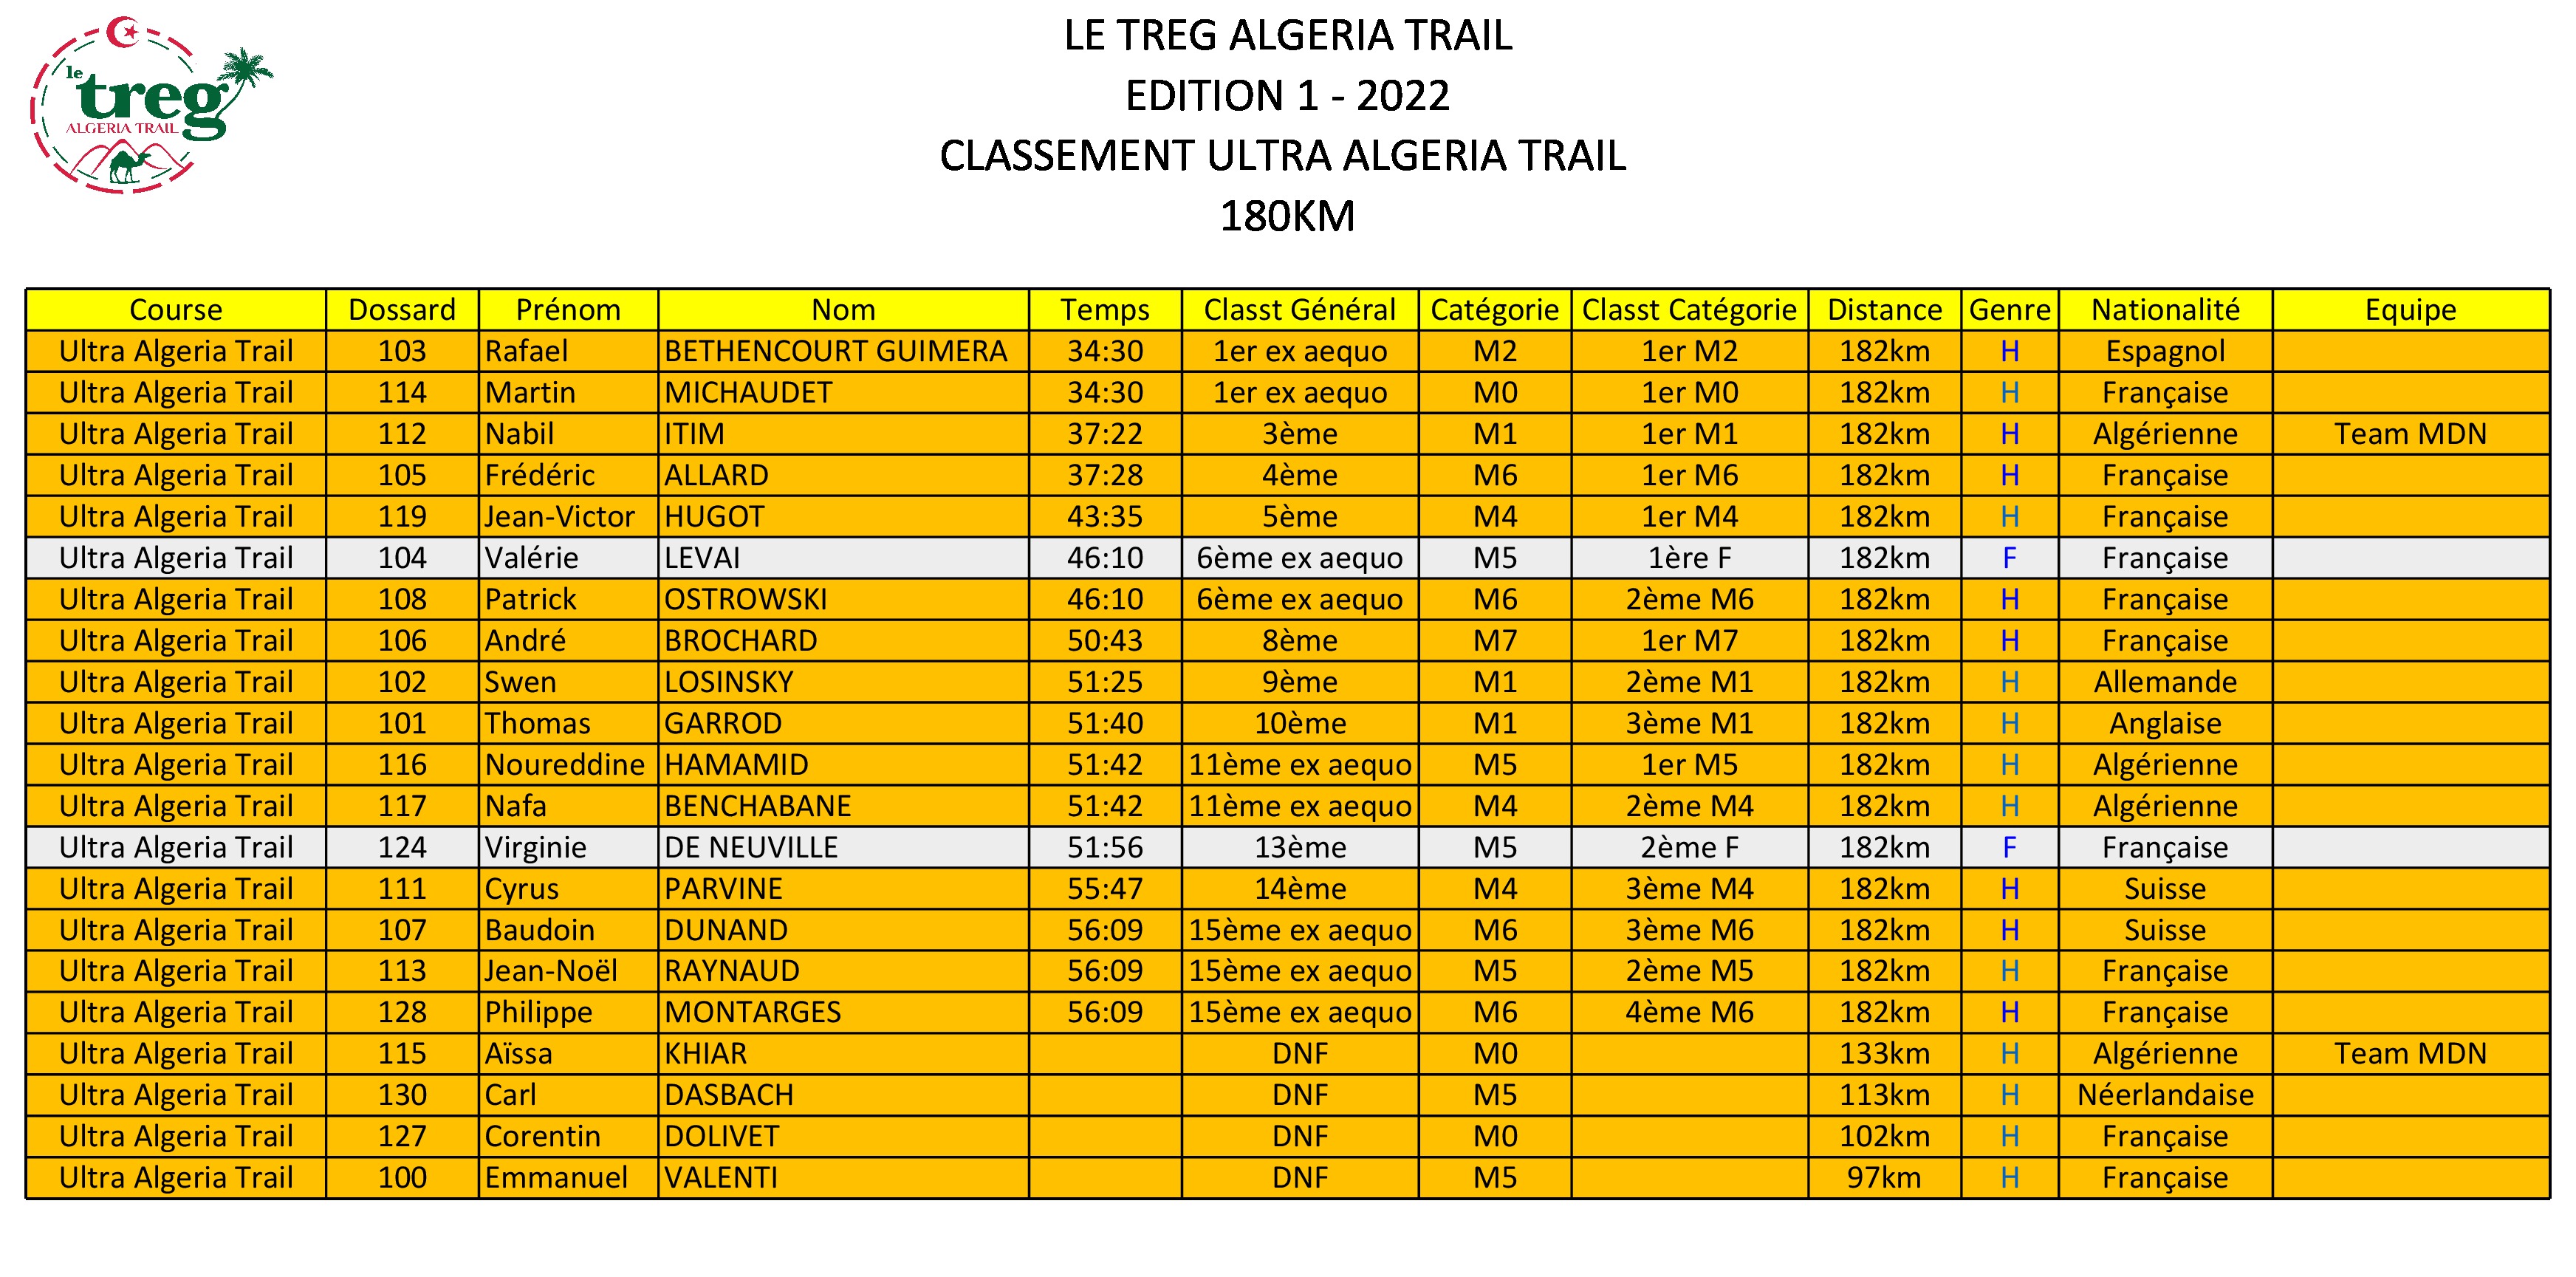 Classement Ultra Algéria Trail 180km 2022.jpg